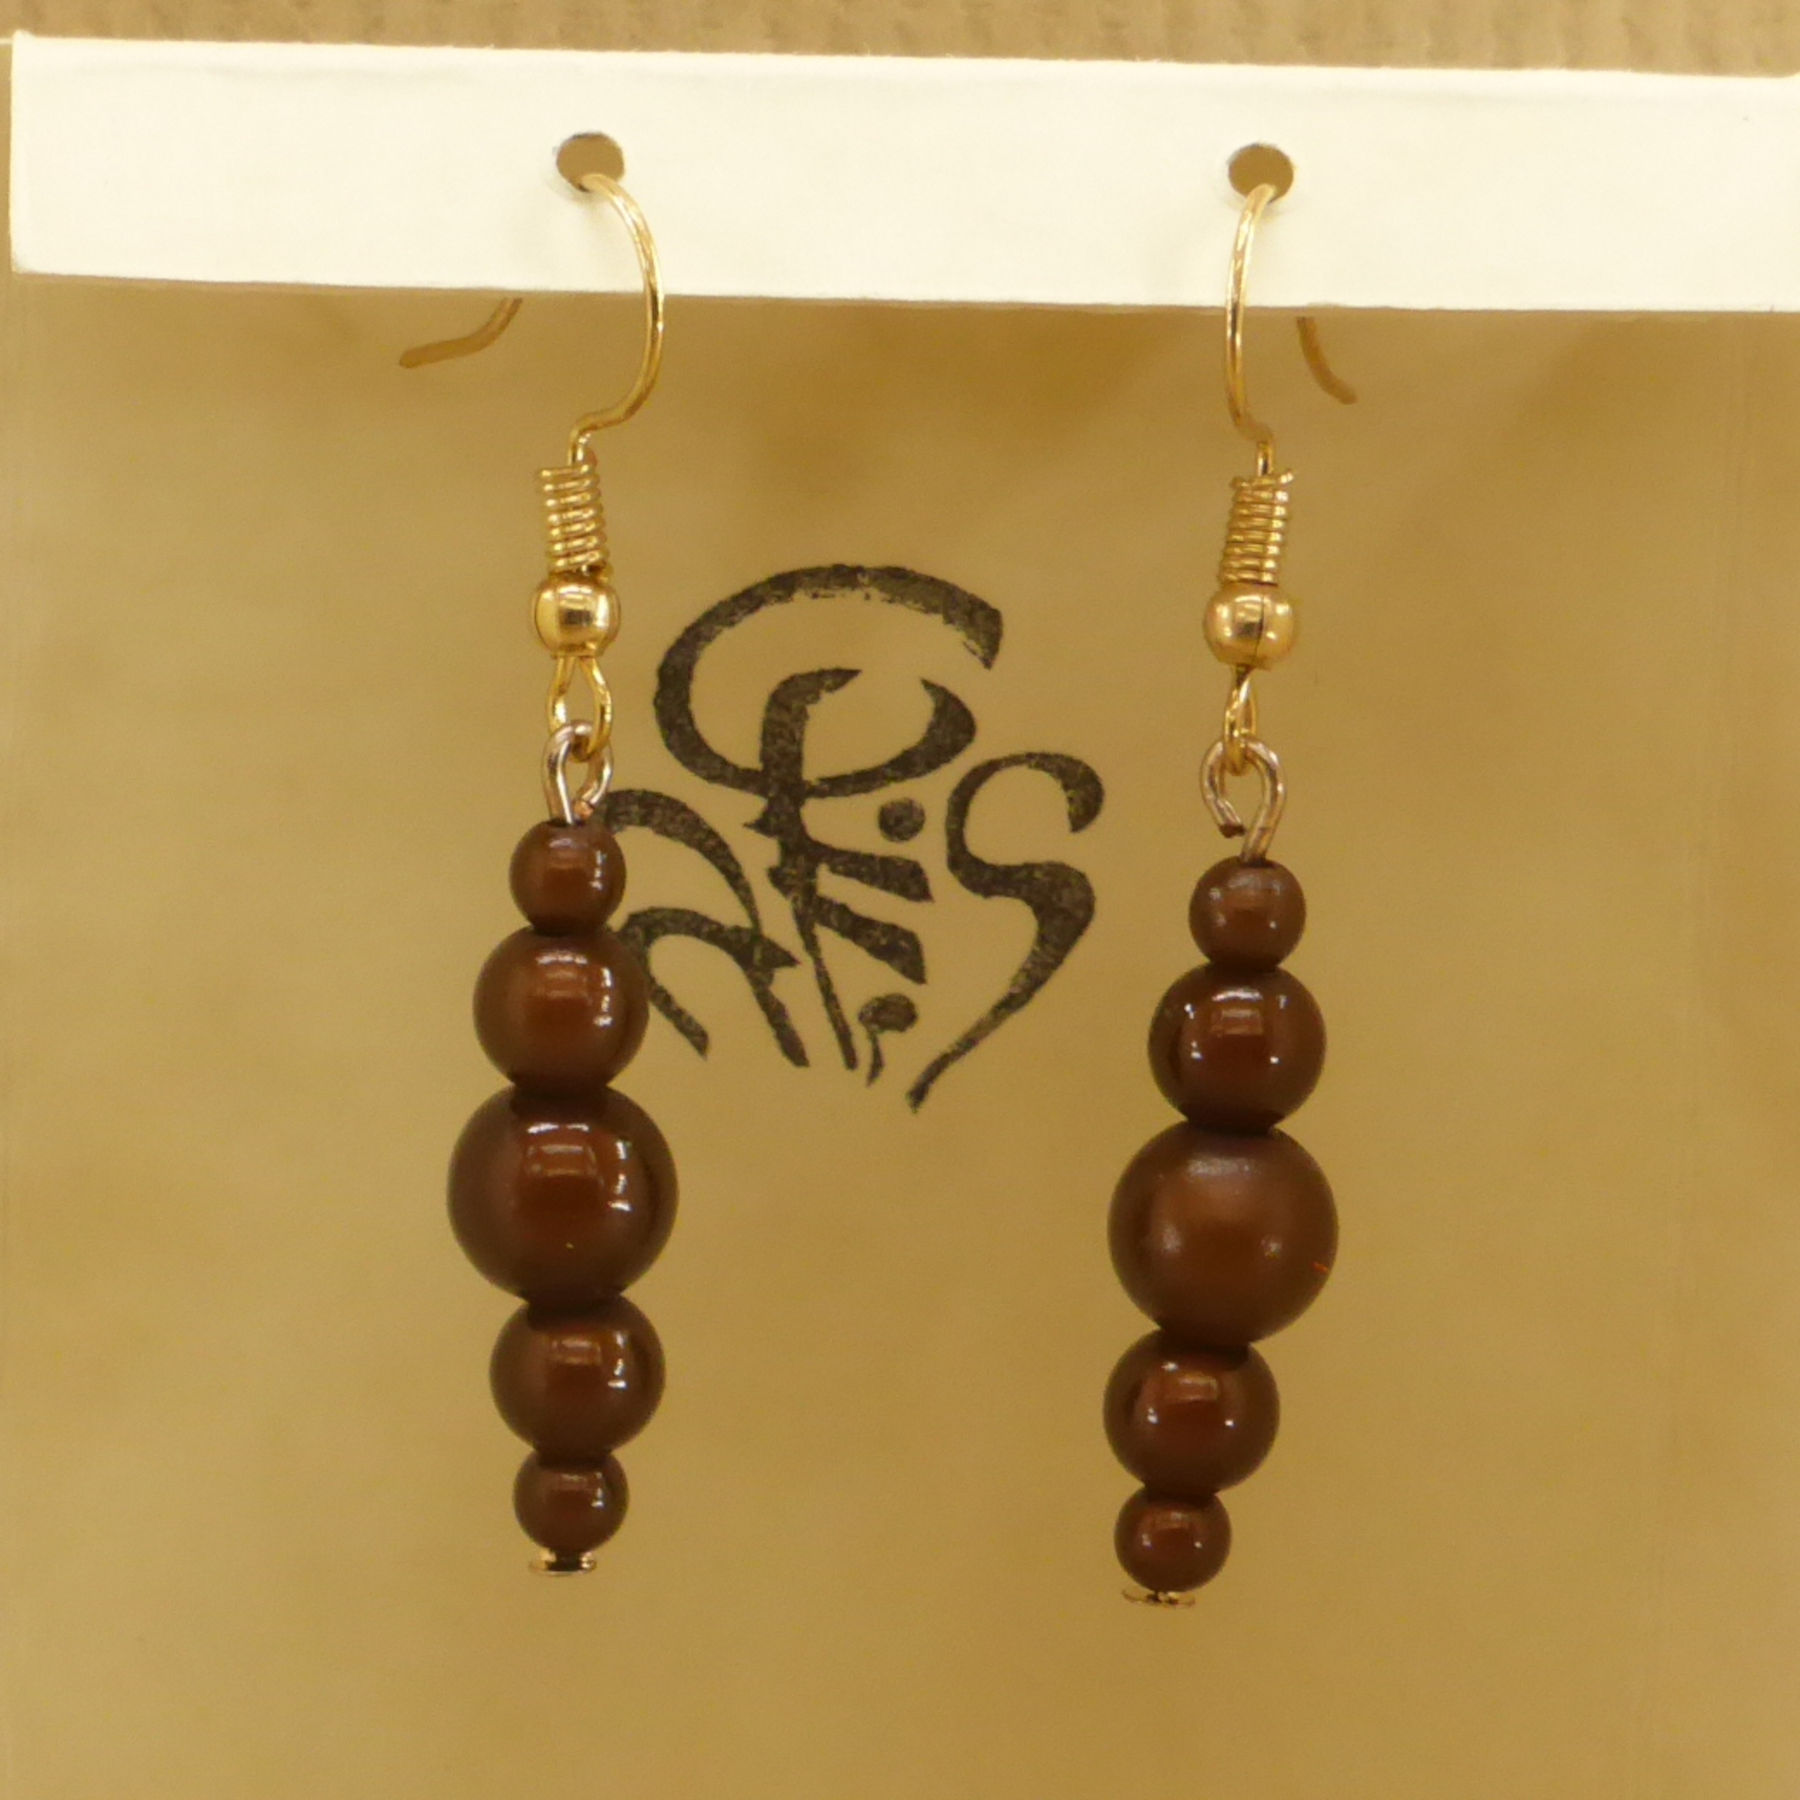 Perles fantaisie marron - empilage en forme de losange